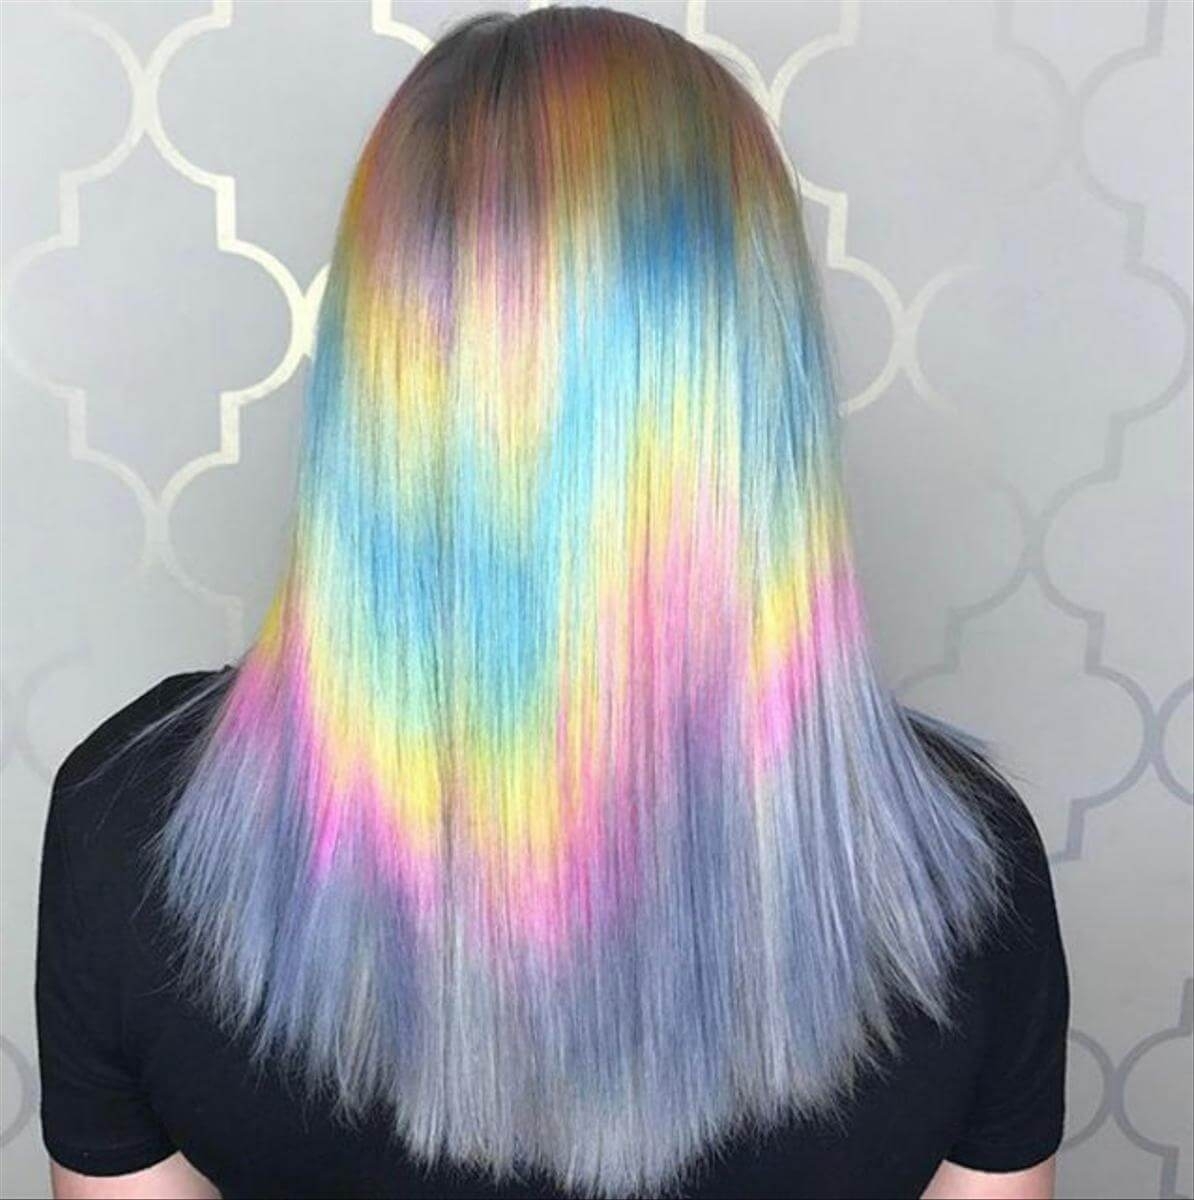 Как часто можно красить волосы осветляющими красками